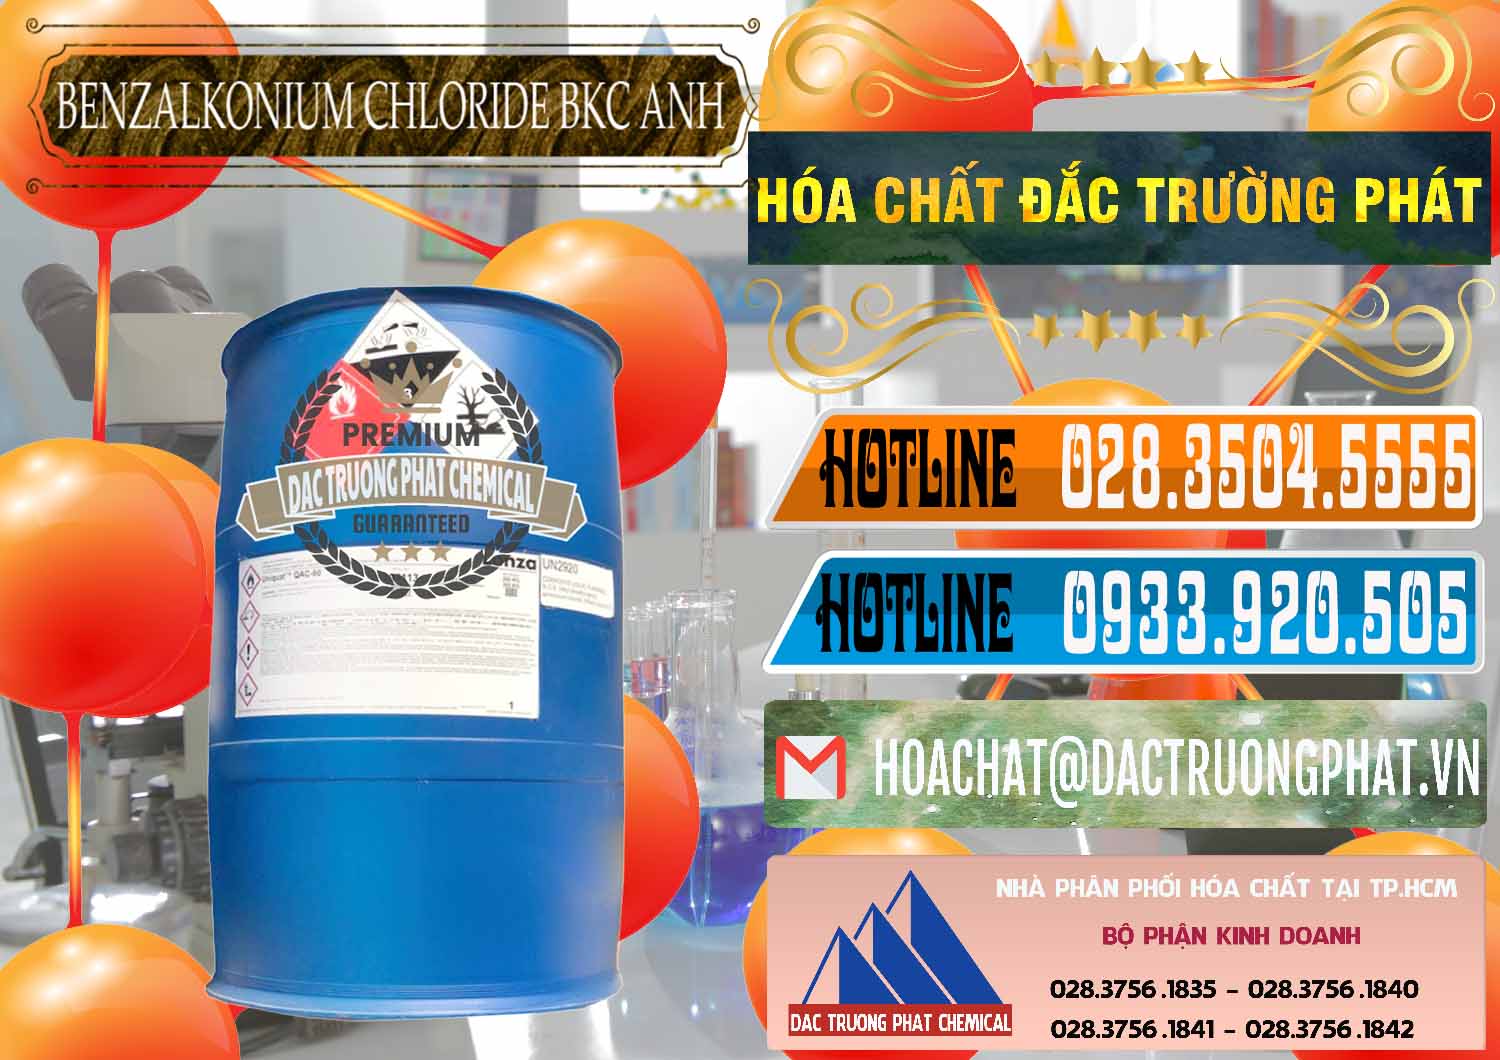 Công ty cung cấp và bán BKC - Benzalkonium Chloride 80% Anh Quốc Uk Kingdoms - 0457 - Đơn vị cung cấp và phân phối hóa chất tại TP.HCM - stmp.net